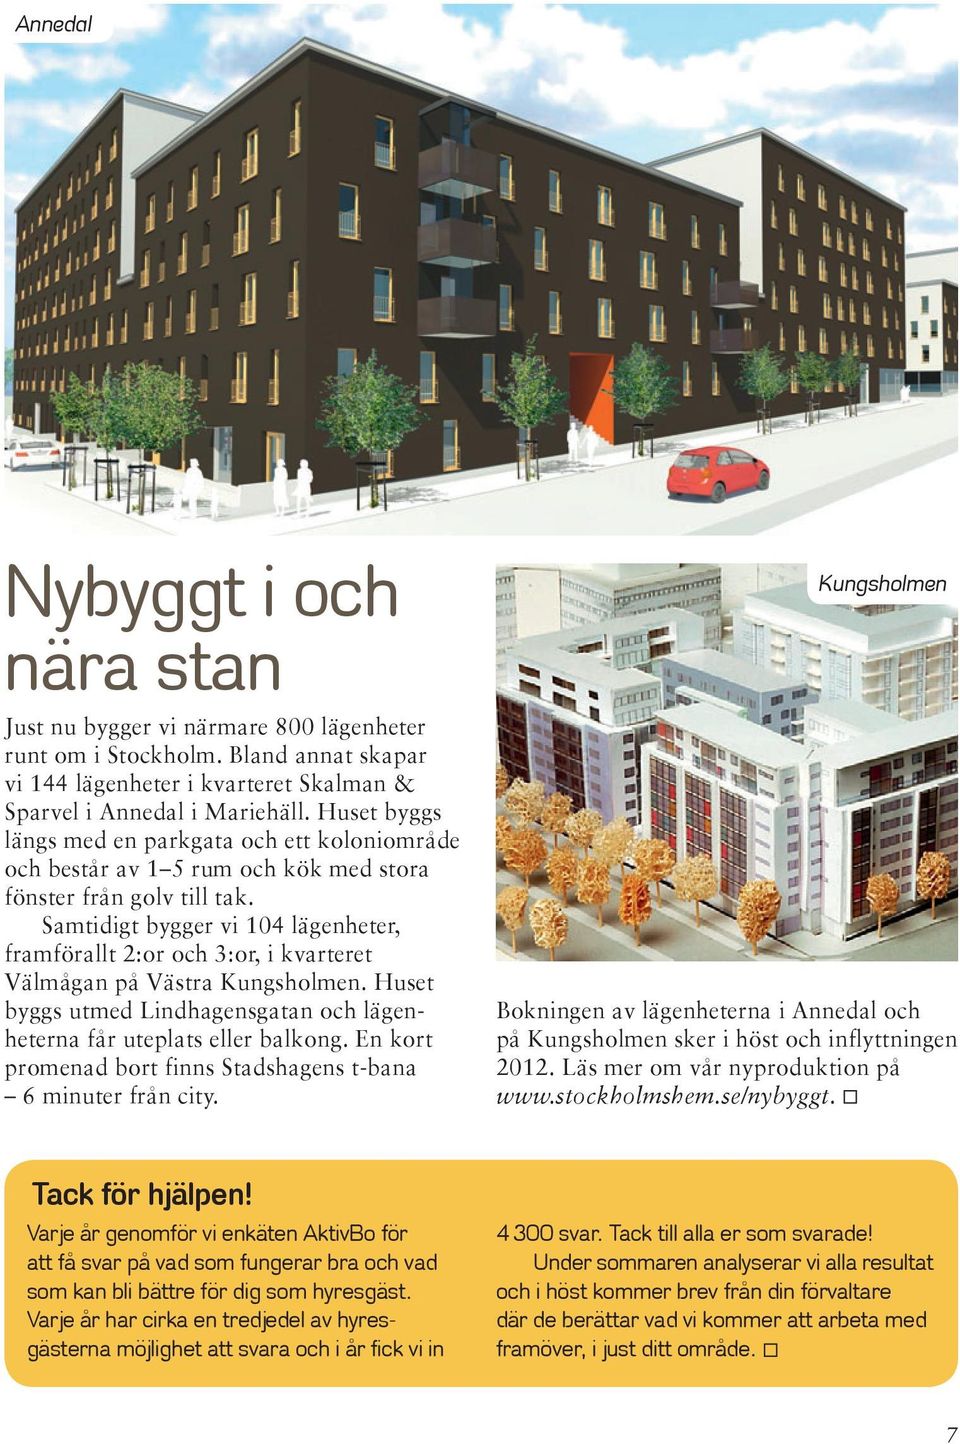 Samtidigt bygger vi 104 lägenheter, framförallt 2:or och 3:or, i kvarteret Väl mågan på Västra Kungsholmen. Huset byggs utmed Lindhagensgatan och lägenheterna får uteplats eller balkong.